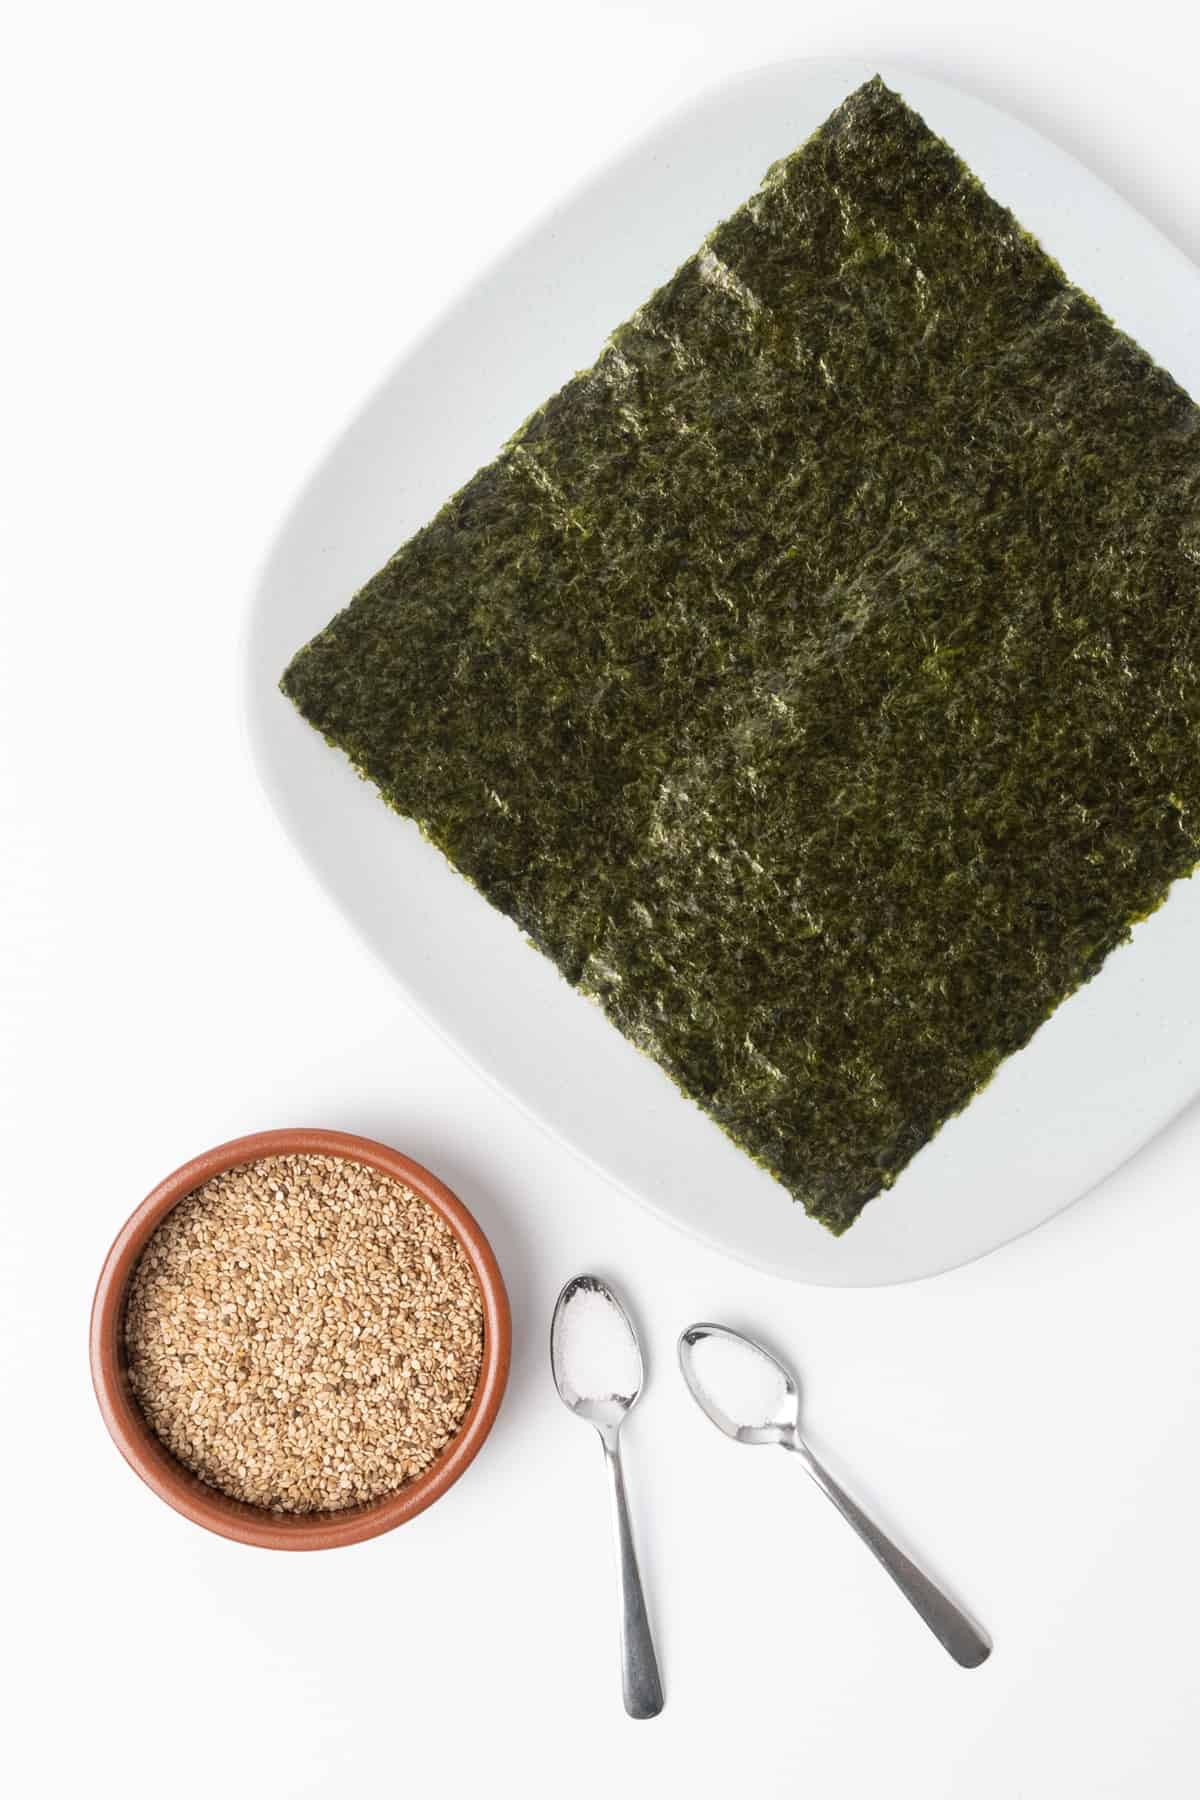 Ingredients of a simple furikake seasoning: sesame seeds, nori seaweed, sugar and salt.